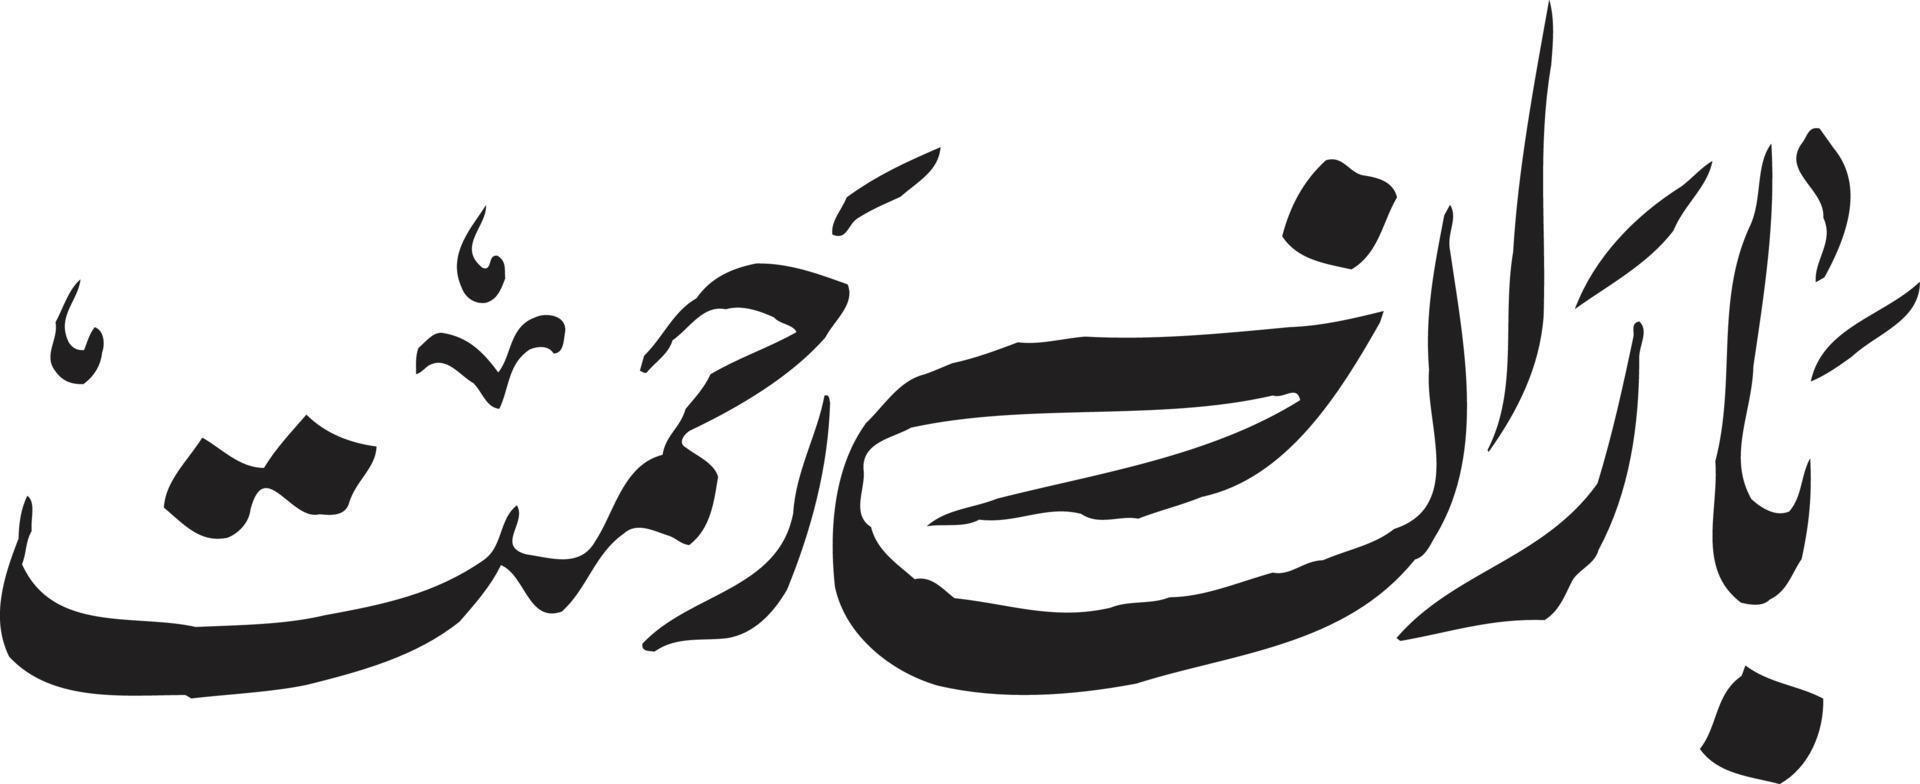 baran rahemat calligraphie islamique vecteur gratuit